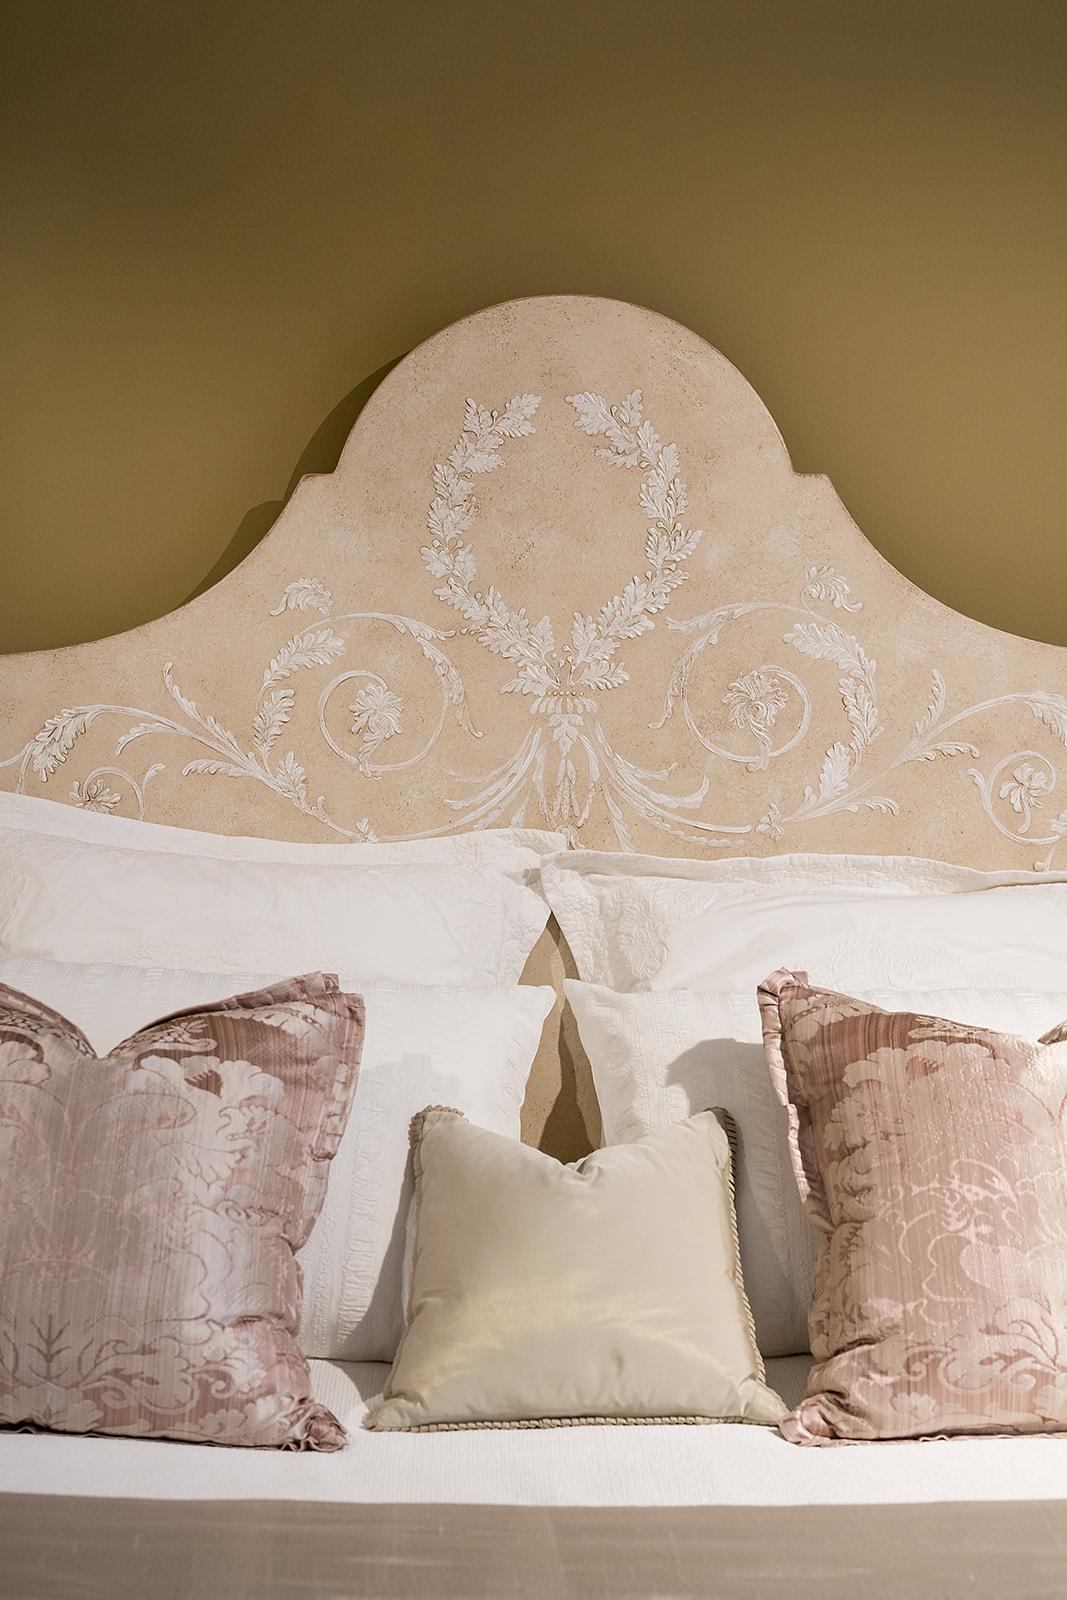 Wir freuen uns, Ihnen aus unserer Hand-Painted Furniture Collection das Roma Bett in Light Taupe vorstellen zu können. 

Manchmal verlangt ein Raum nach einer dezenteren Einrichtung.

Das subtile, erhabene Gesso-Muster auf der etwas dunkleren